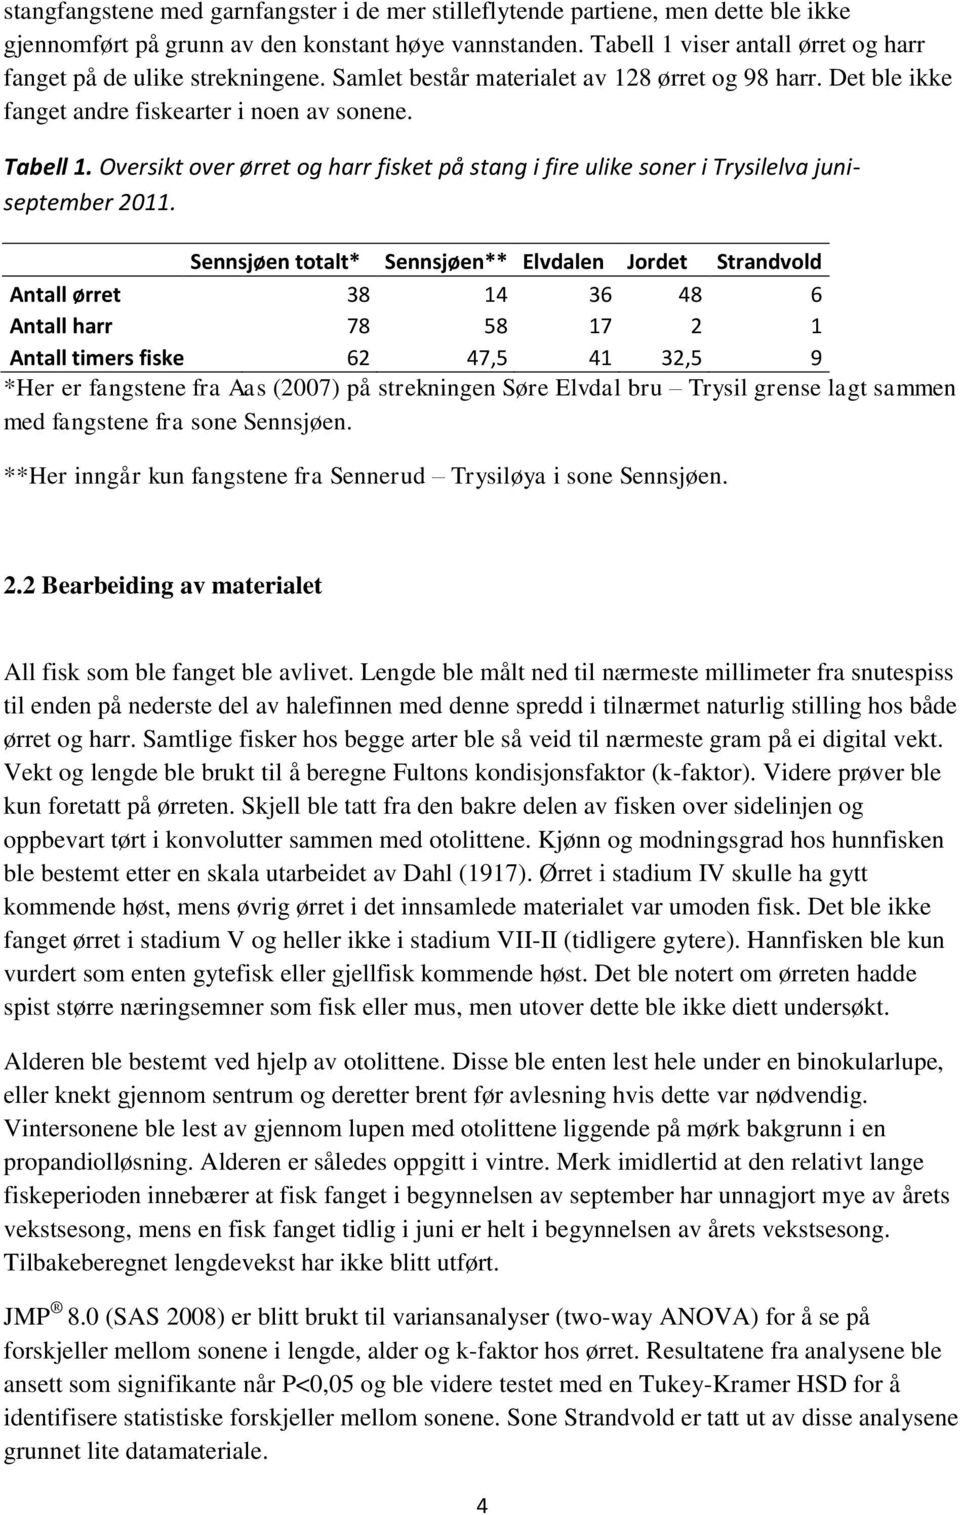 Oversikt over ørret og harr fisket på stang i fire ulike soner i Trysilelva juniseptember 2011.